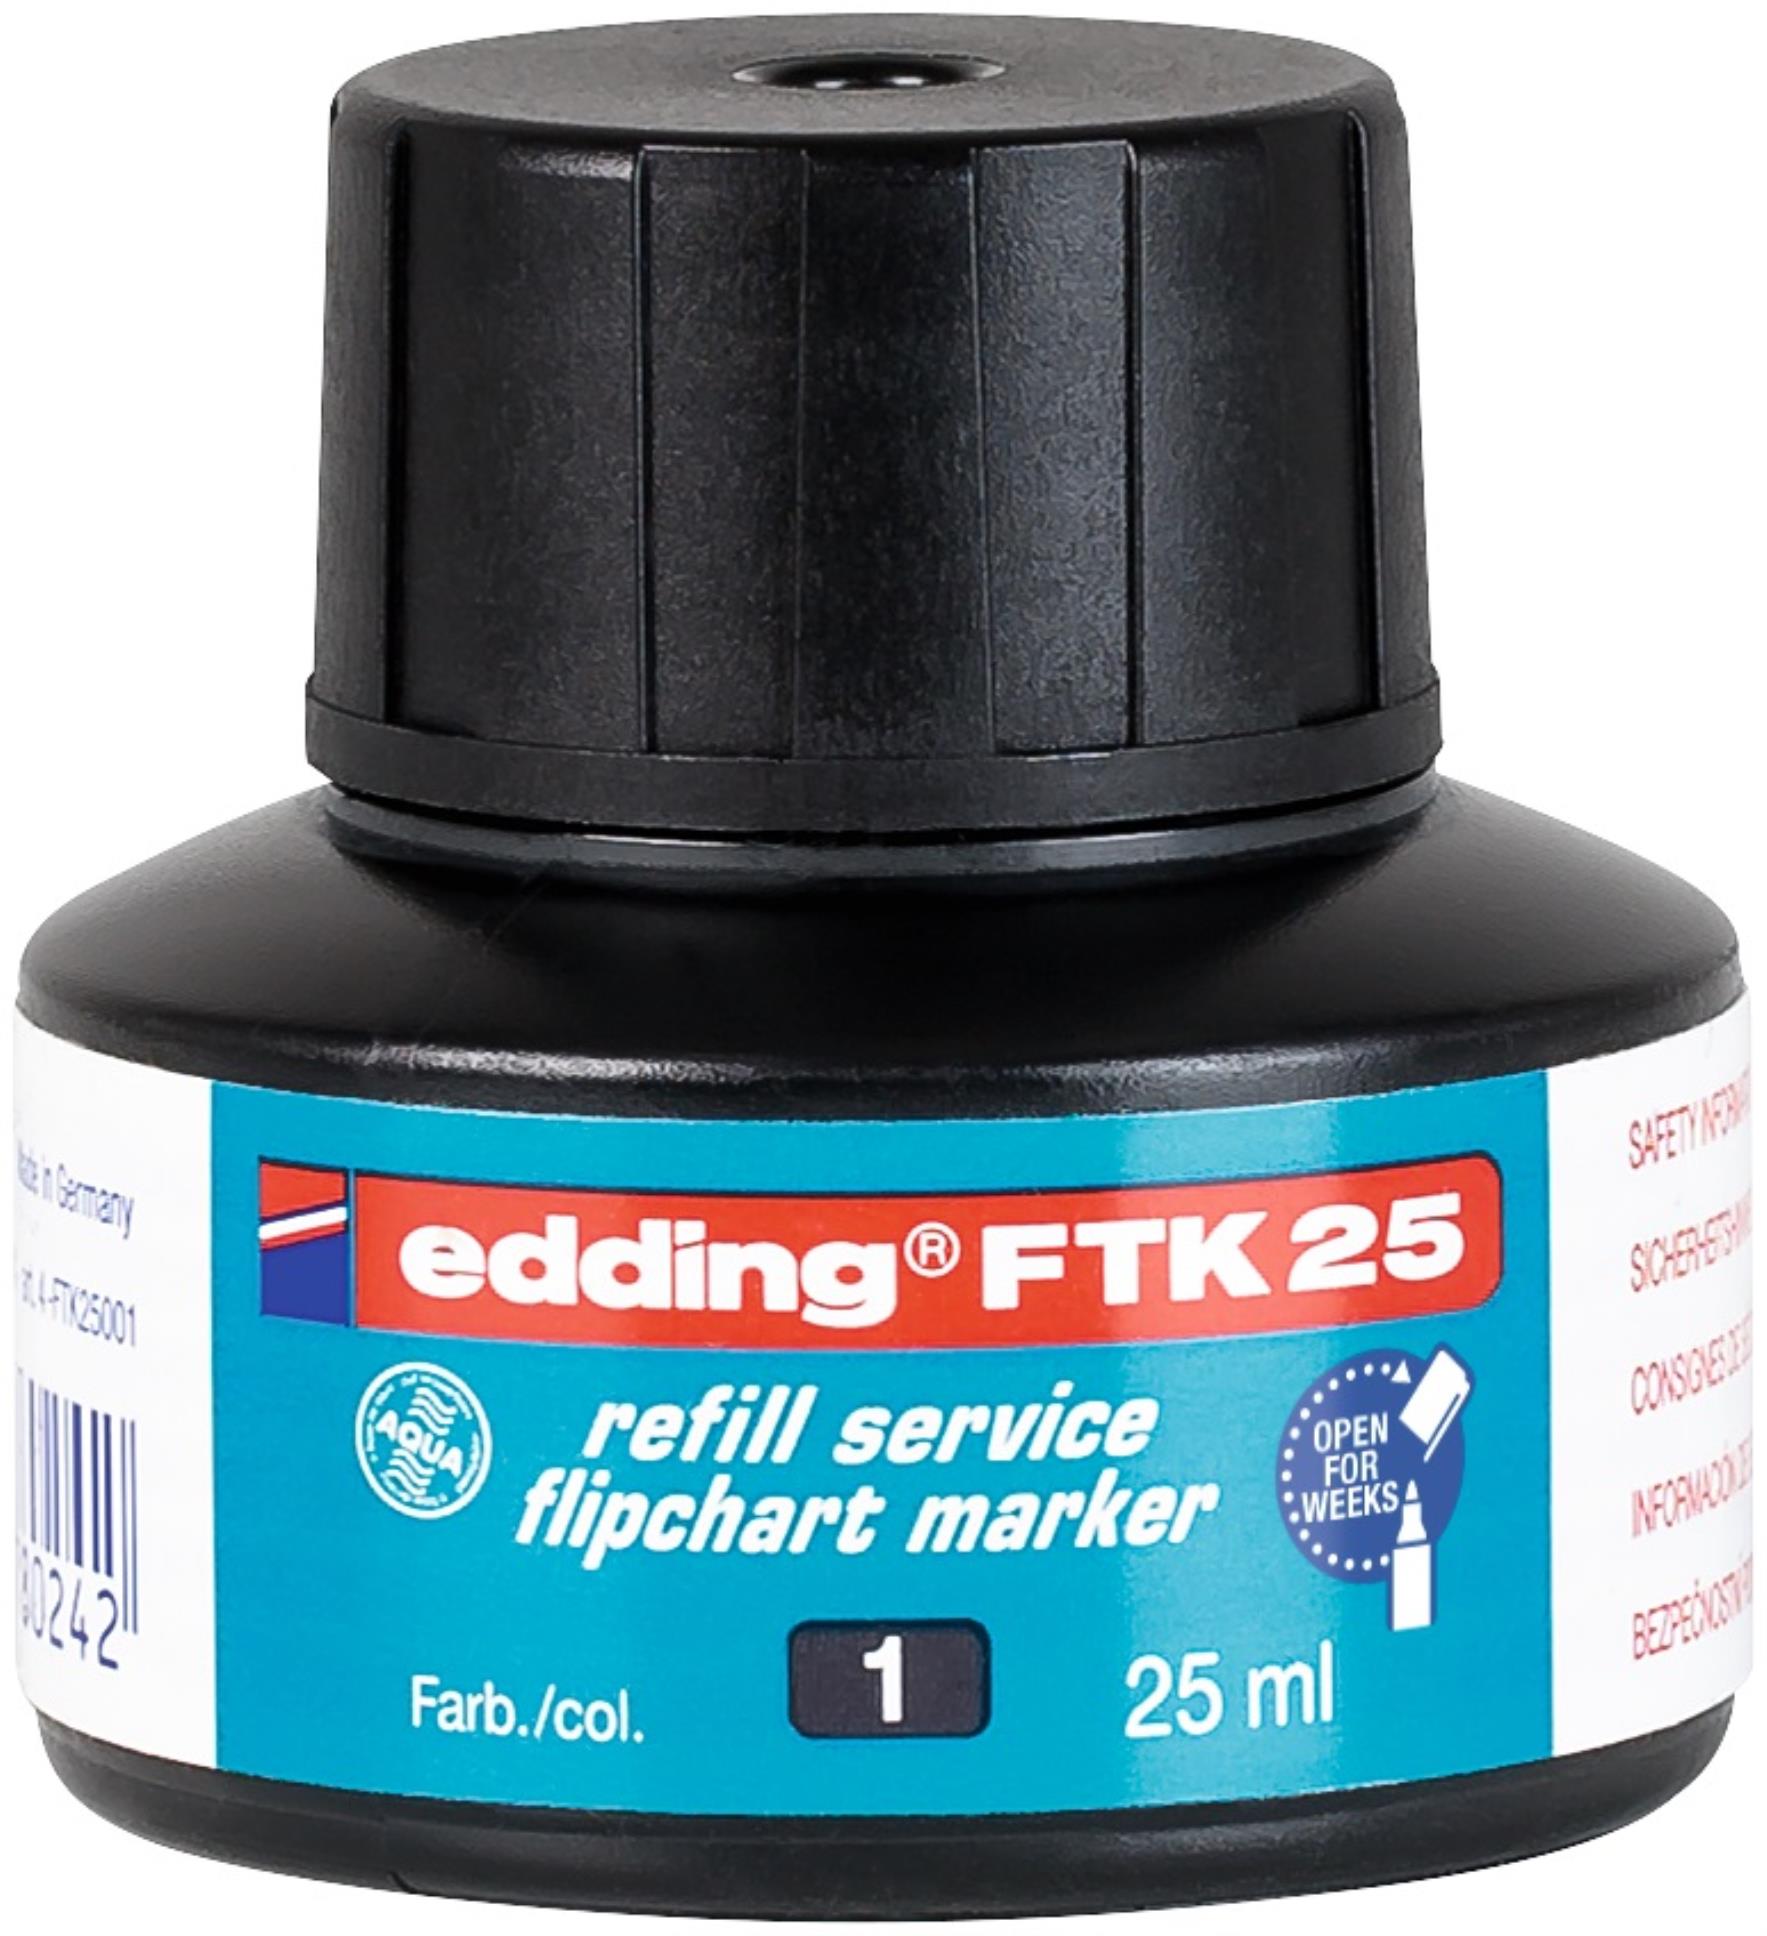 Náhradní inkoust pro flipchartové popisovače Edding FTK 25 - černý